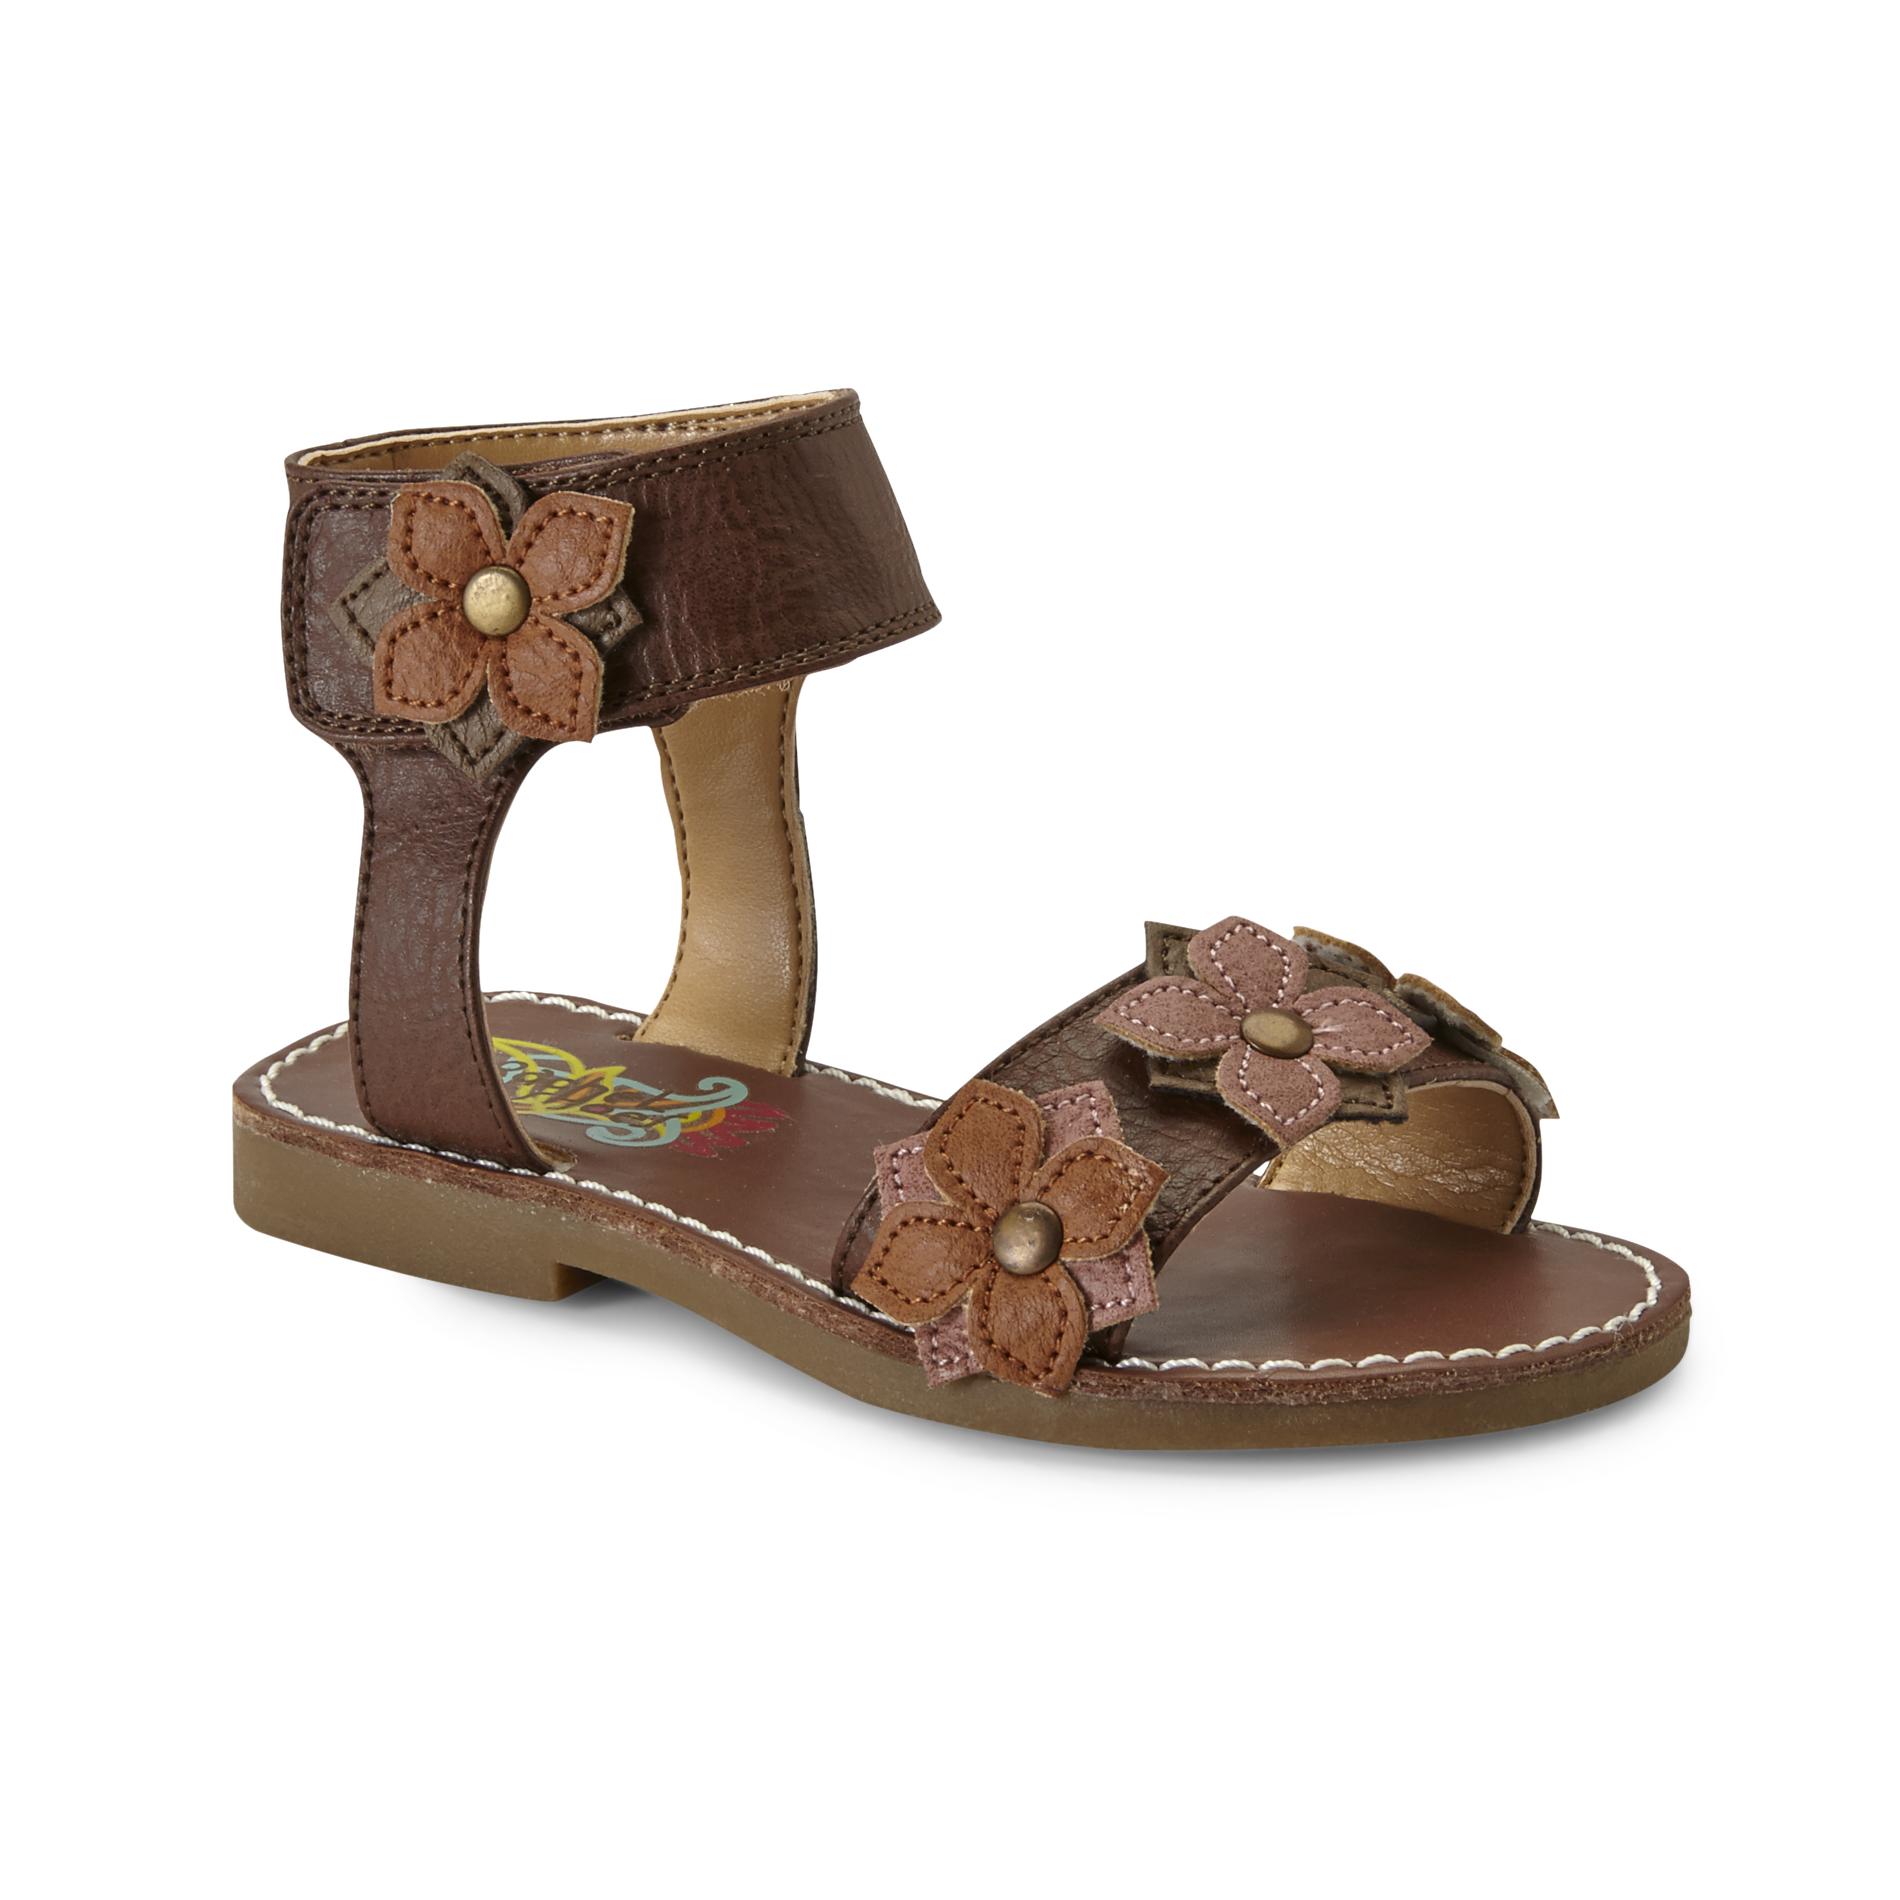 Rachel Shoes Toddler Girl's Roseville Brown Gladiator Sandal - Flowers